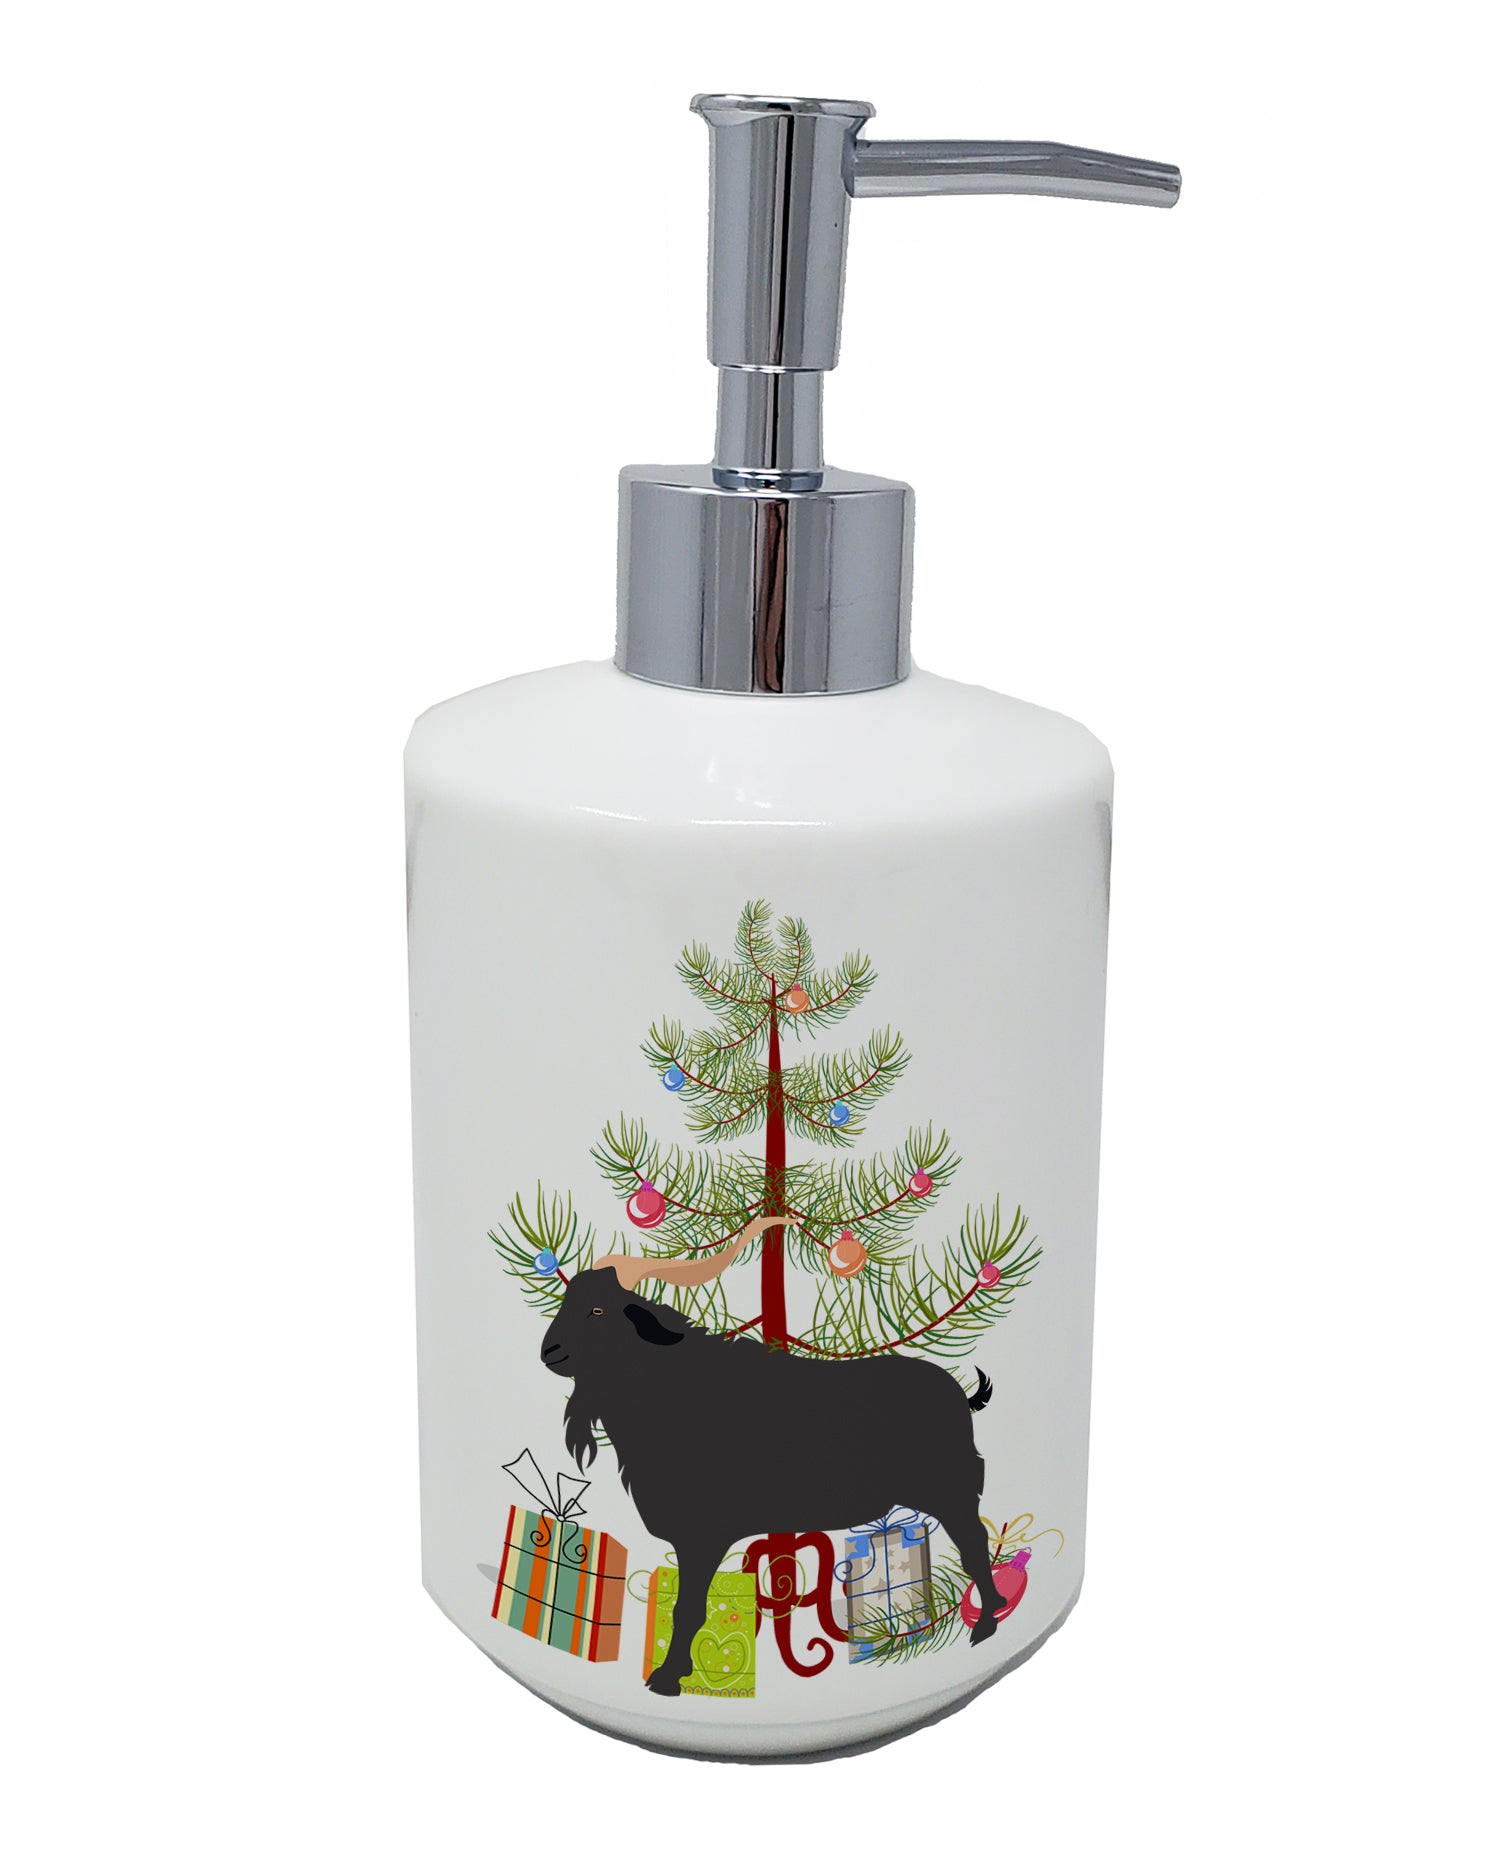 Buy this Verata Goat Christmas Ceramic Soap Dispenser